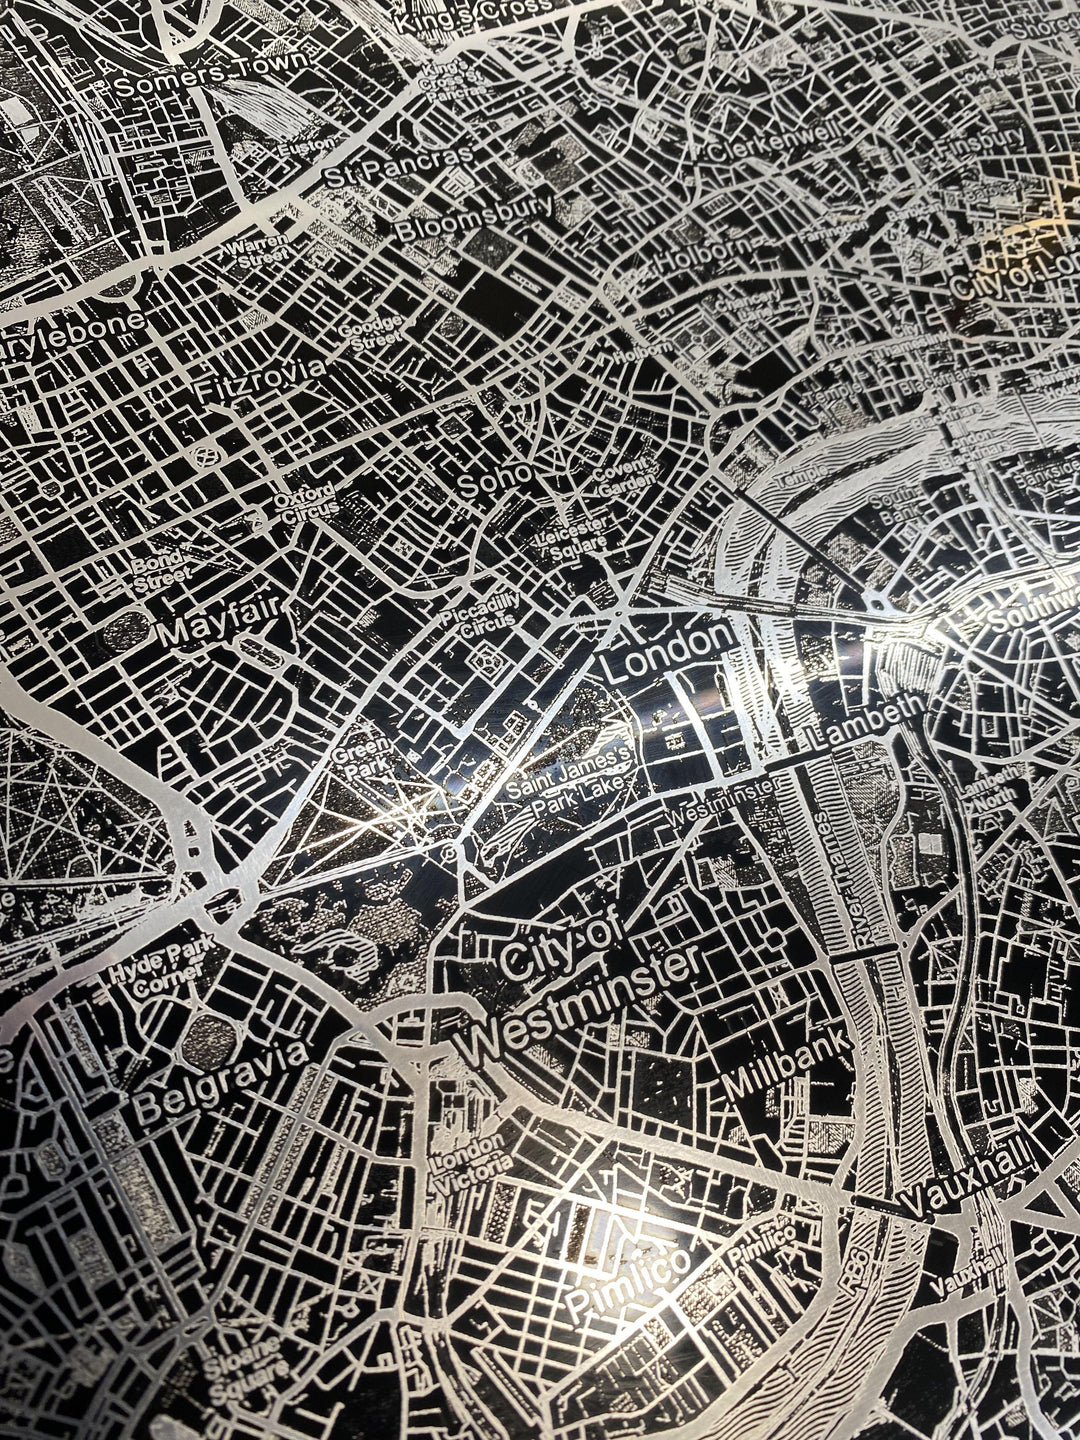 Laser Engraved Polished Aluminum Map of London - Medium - Alpha Channel Design